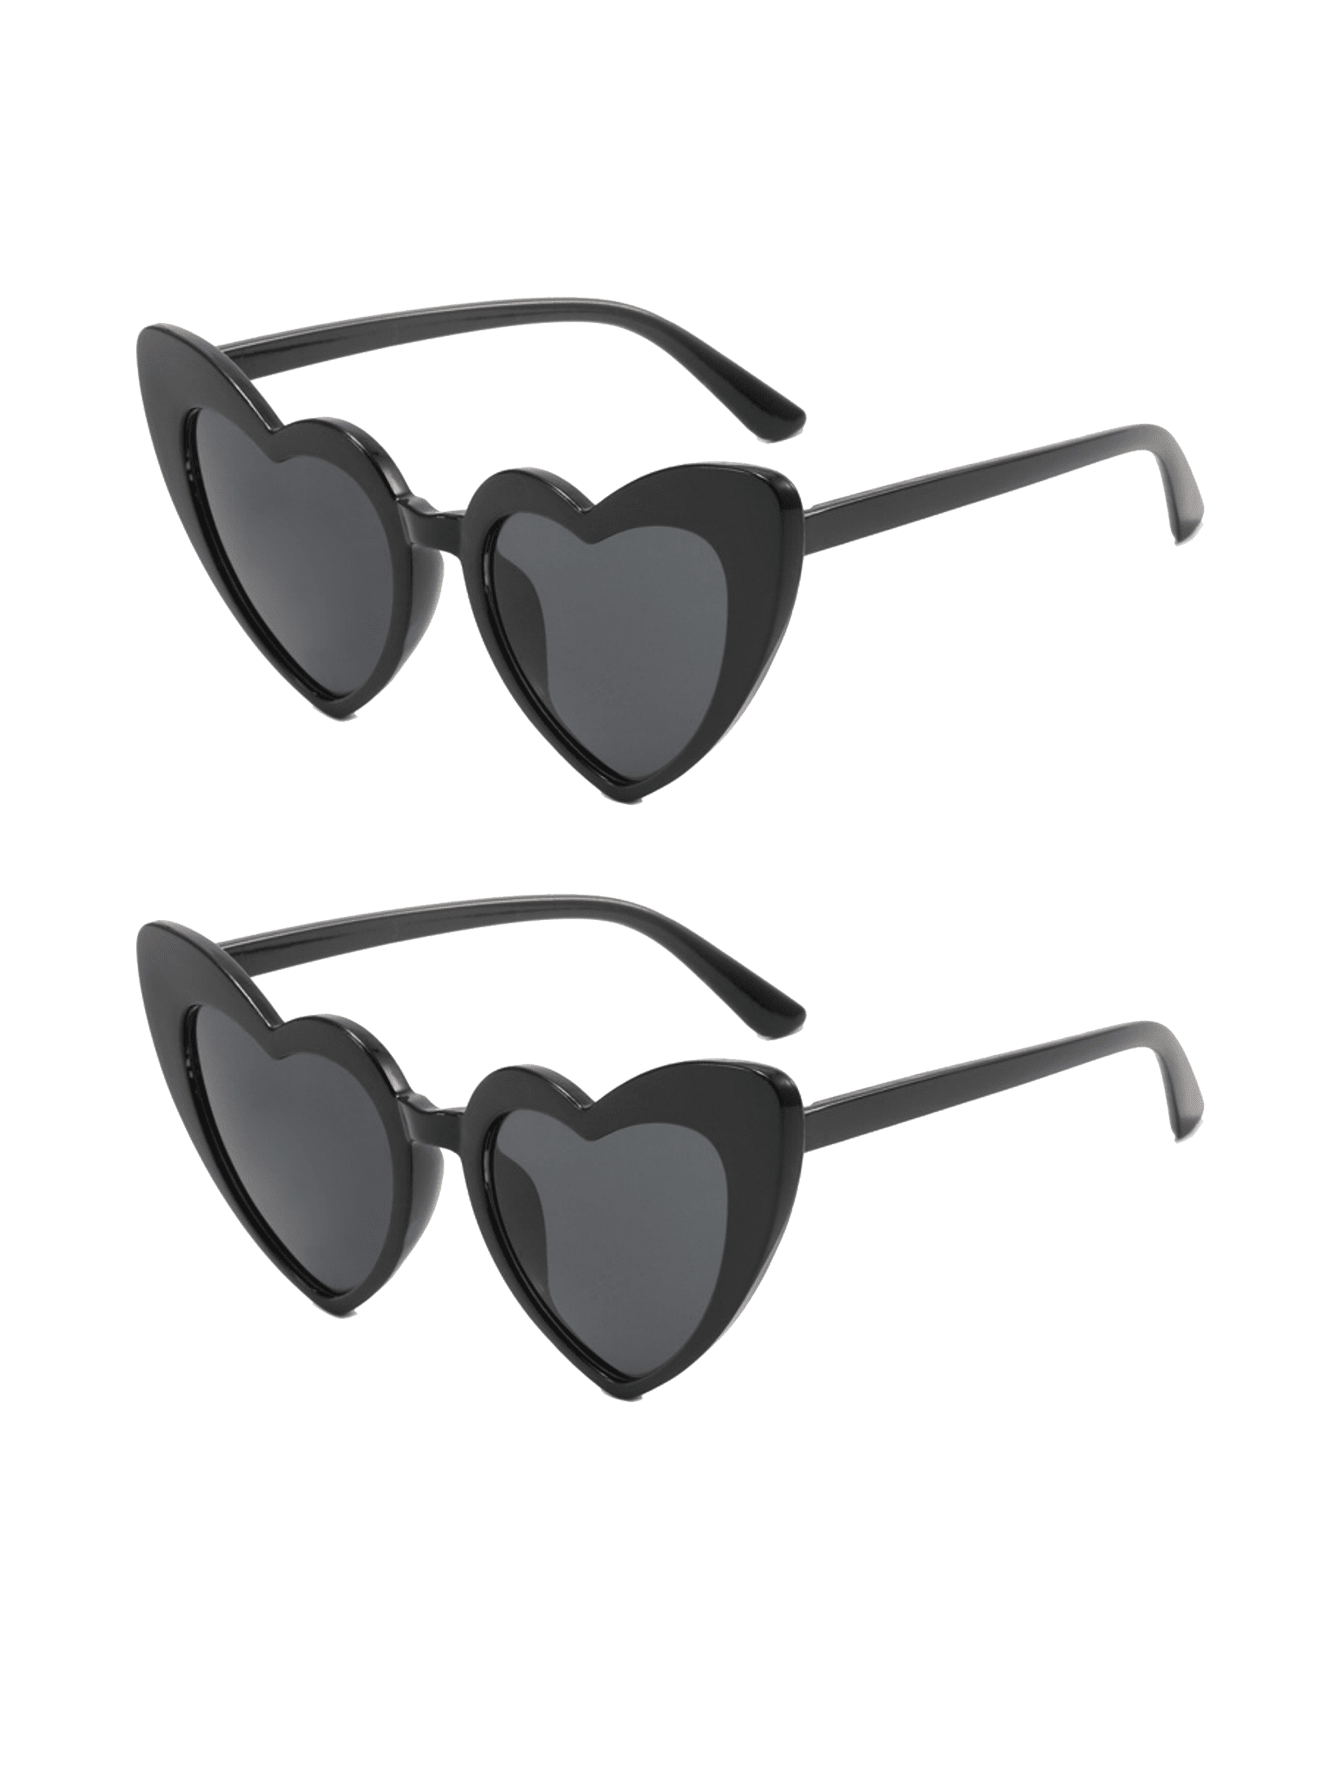 2 шт. солнцезащитные очки в форме сердца для женщин солнцезащитные очки аврора от дисней